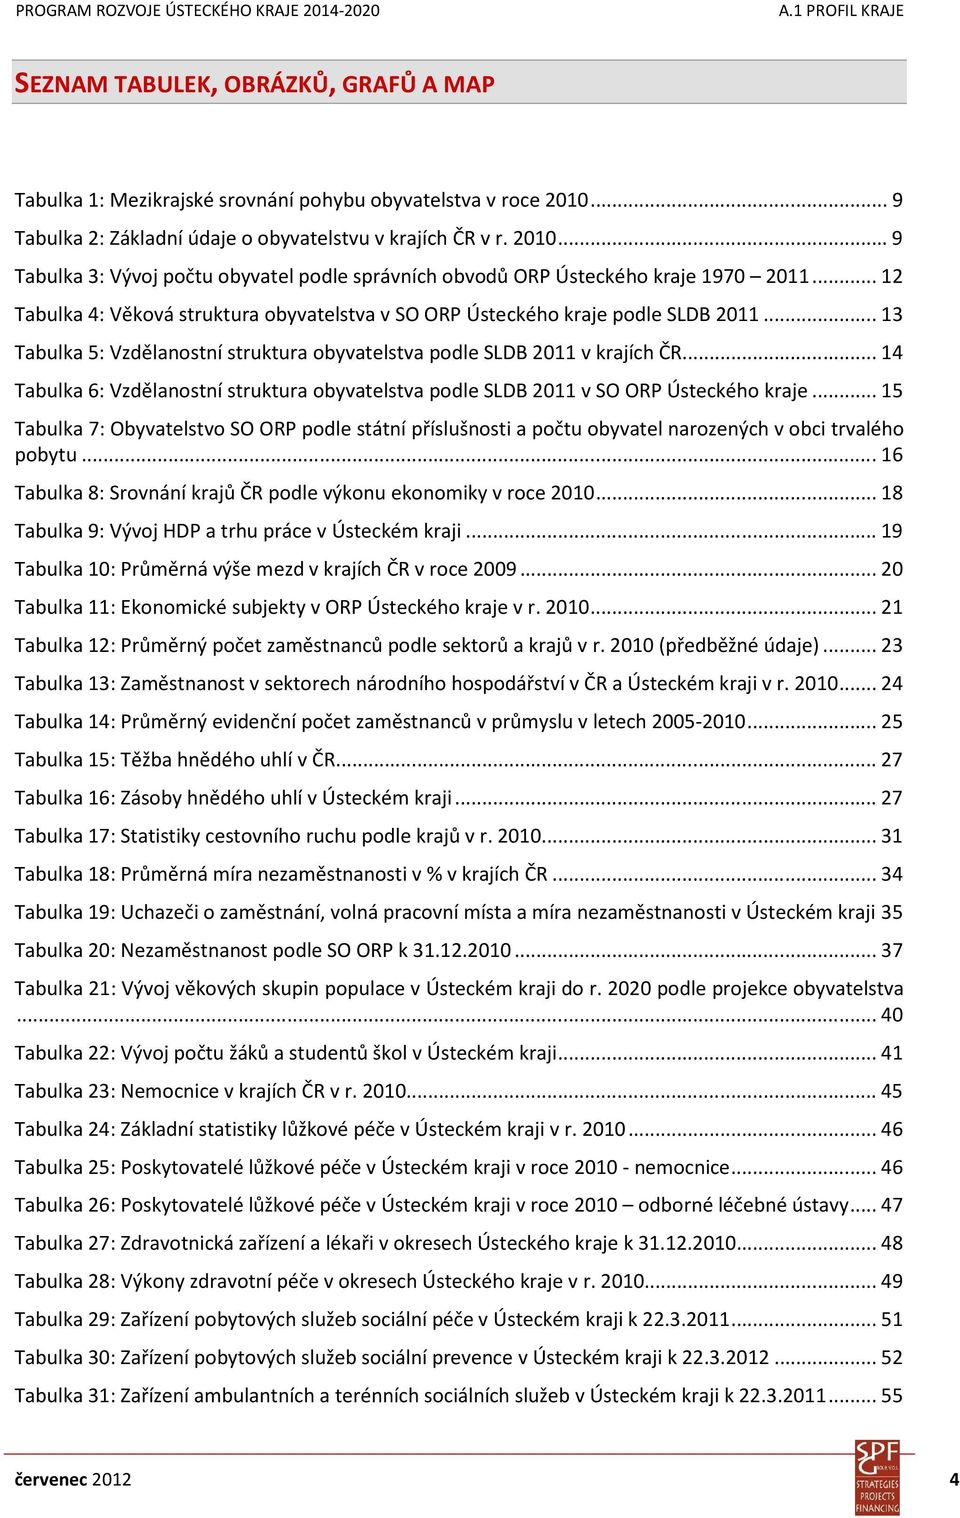 .. 14 Tabulka 6: Vzdělanostní struktura obyvatelstva podle SLDB 2011 v SO ORP Ústeckého kraje.